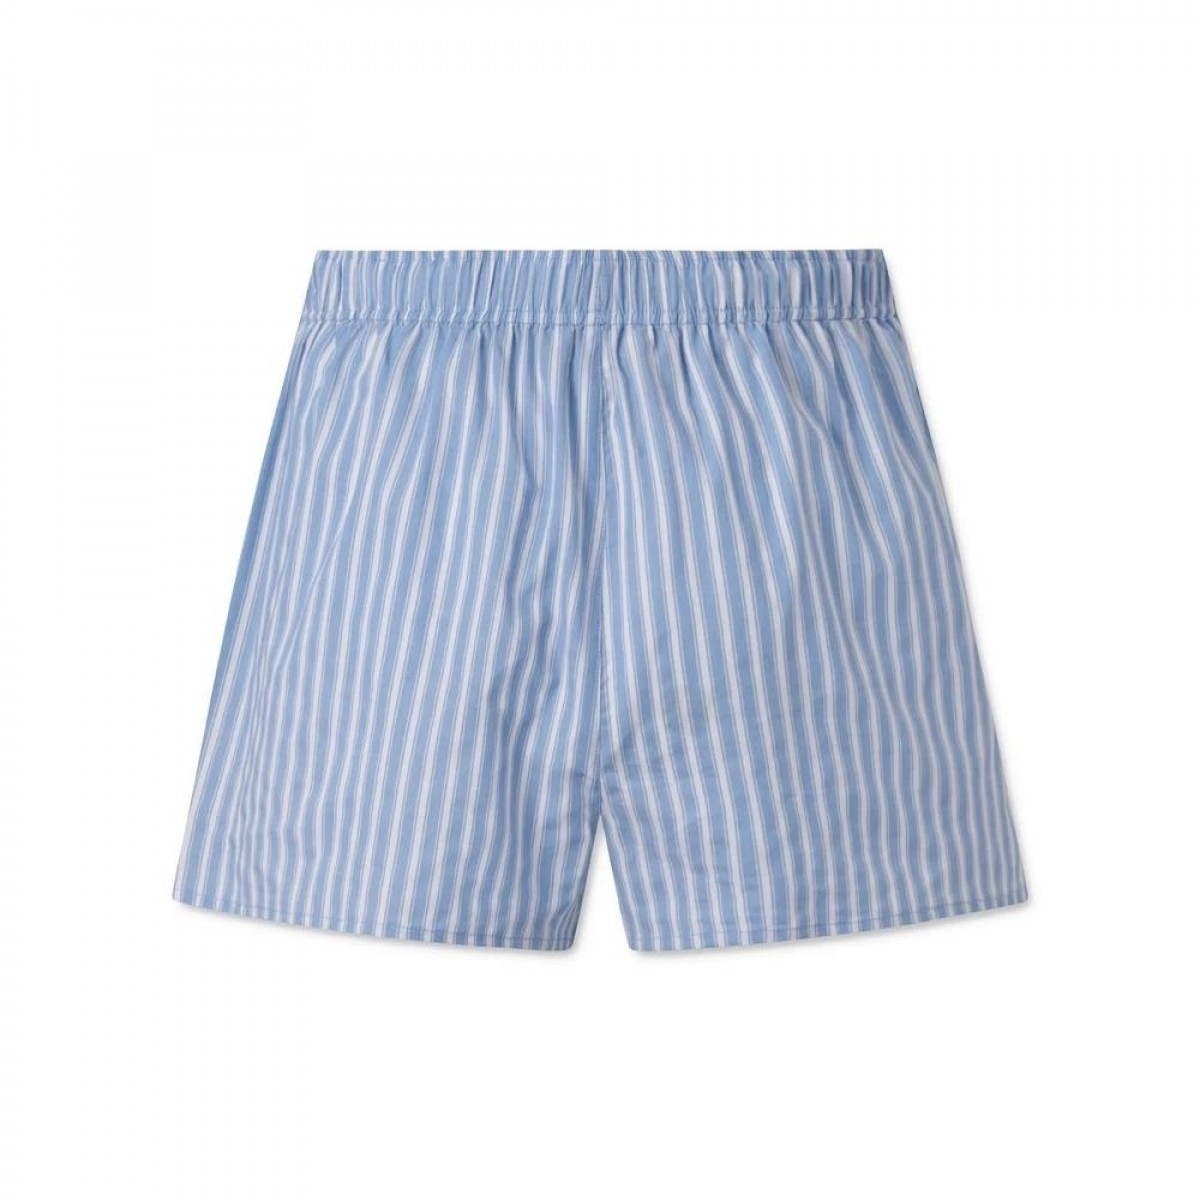 alessio shorts - clear blue - bag